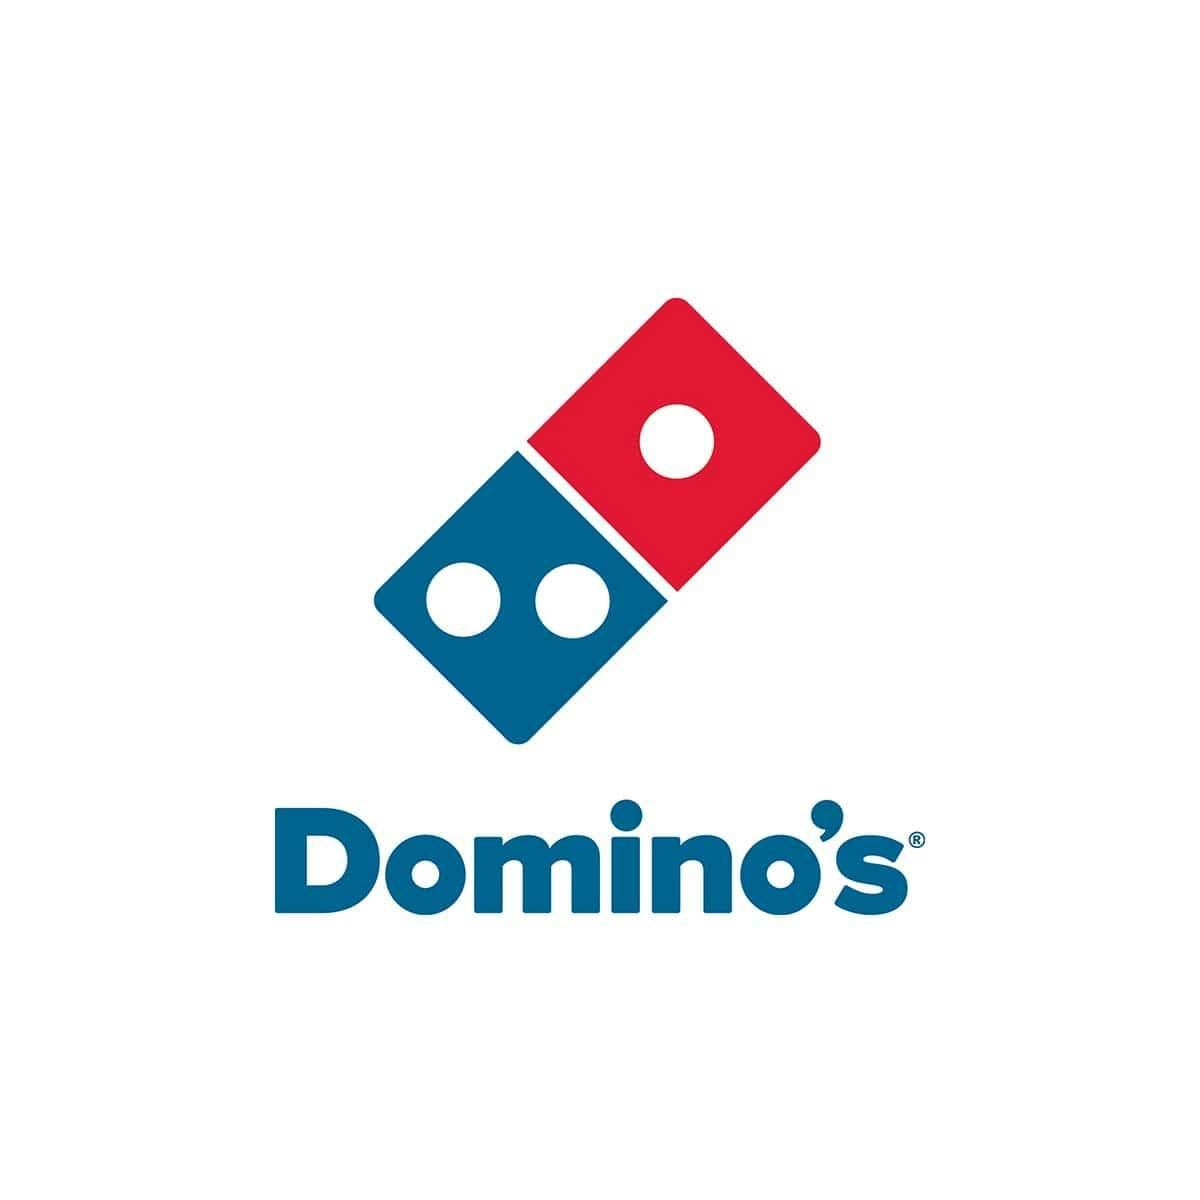  diseño de logos corporativos - domino's pizza